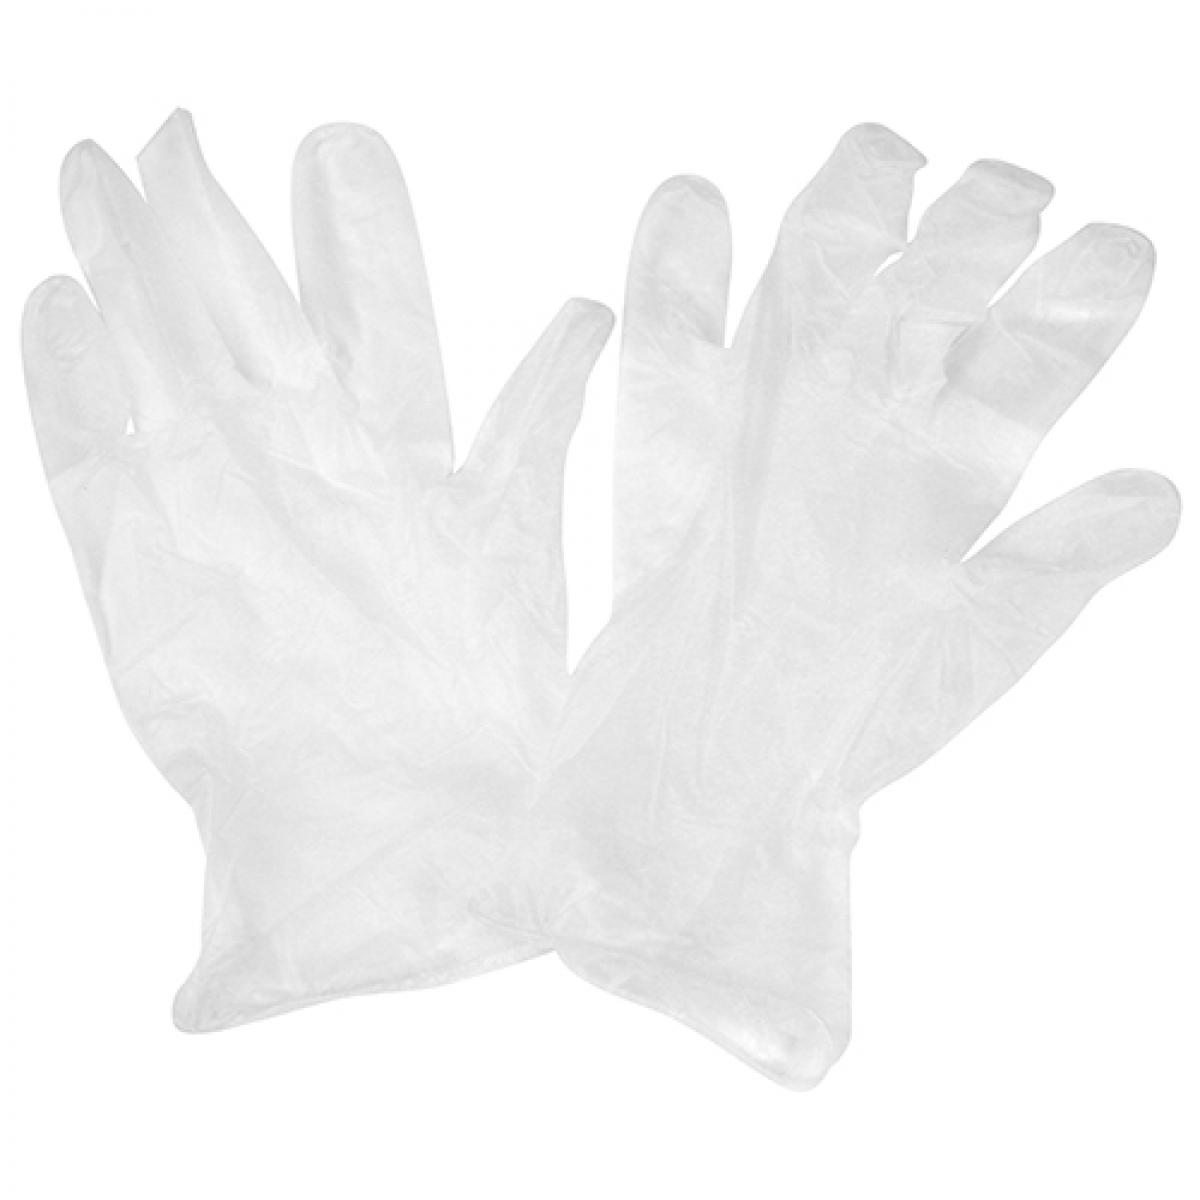 セフティー3 園芸用簡易手袋 左右兼用 6枚入り フリーサイズ 超薄手 パウダーフリー 薬剤希釈